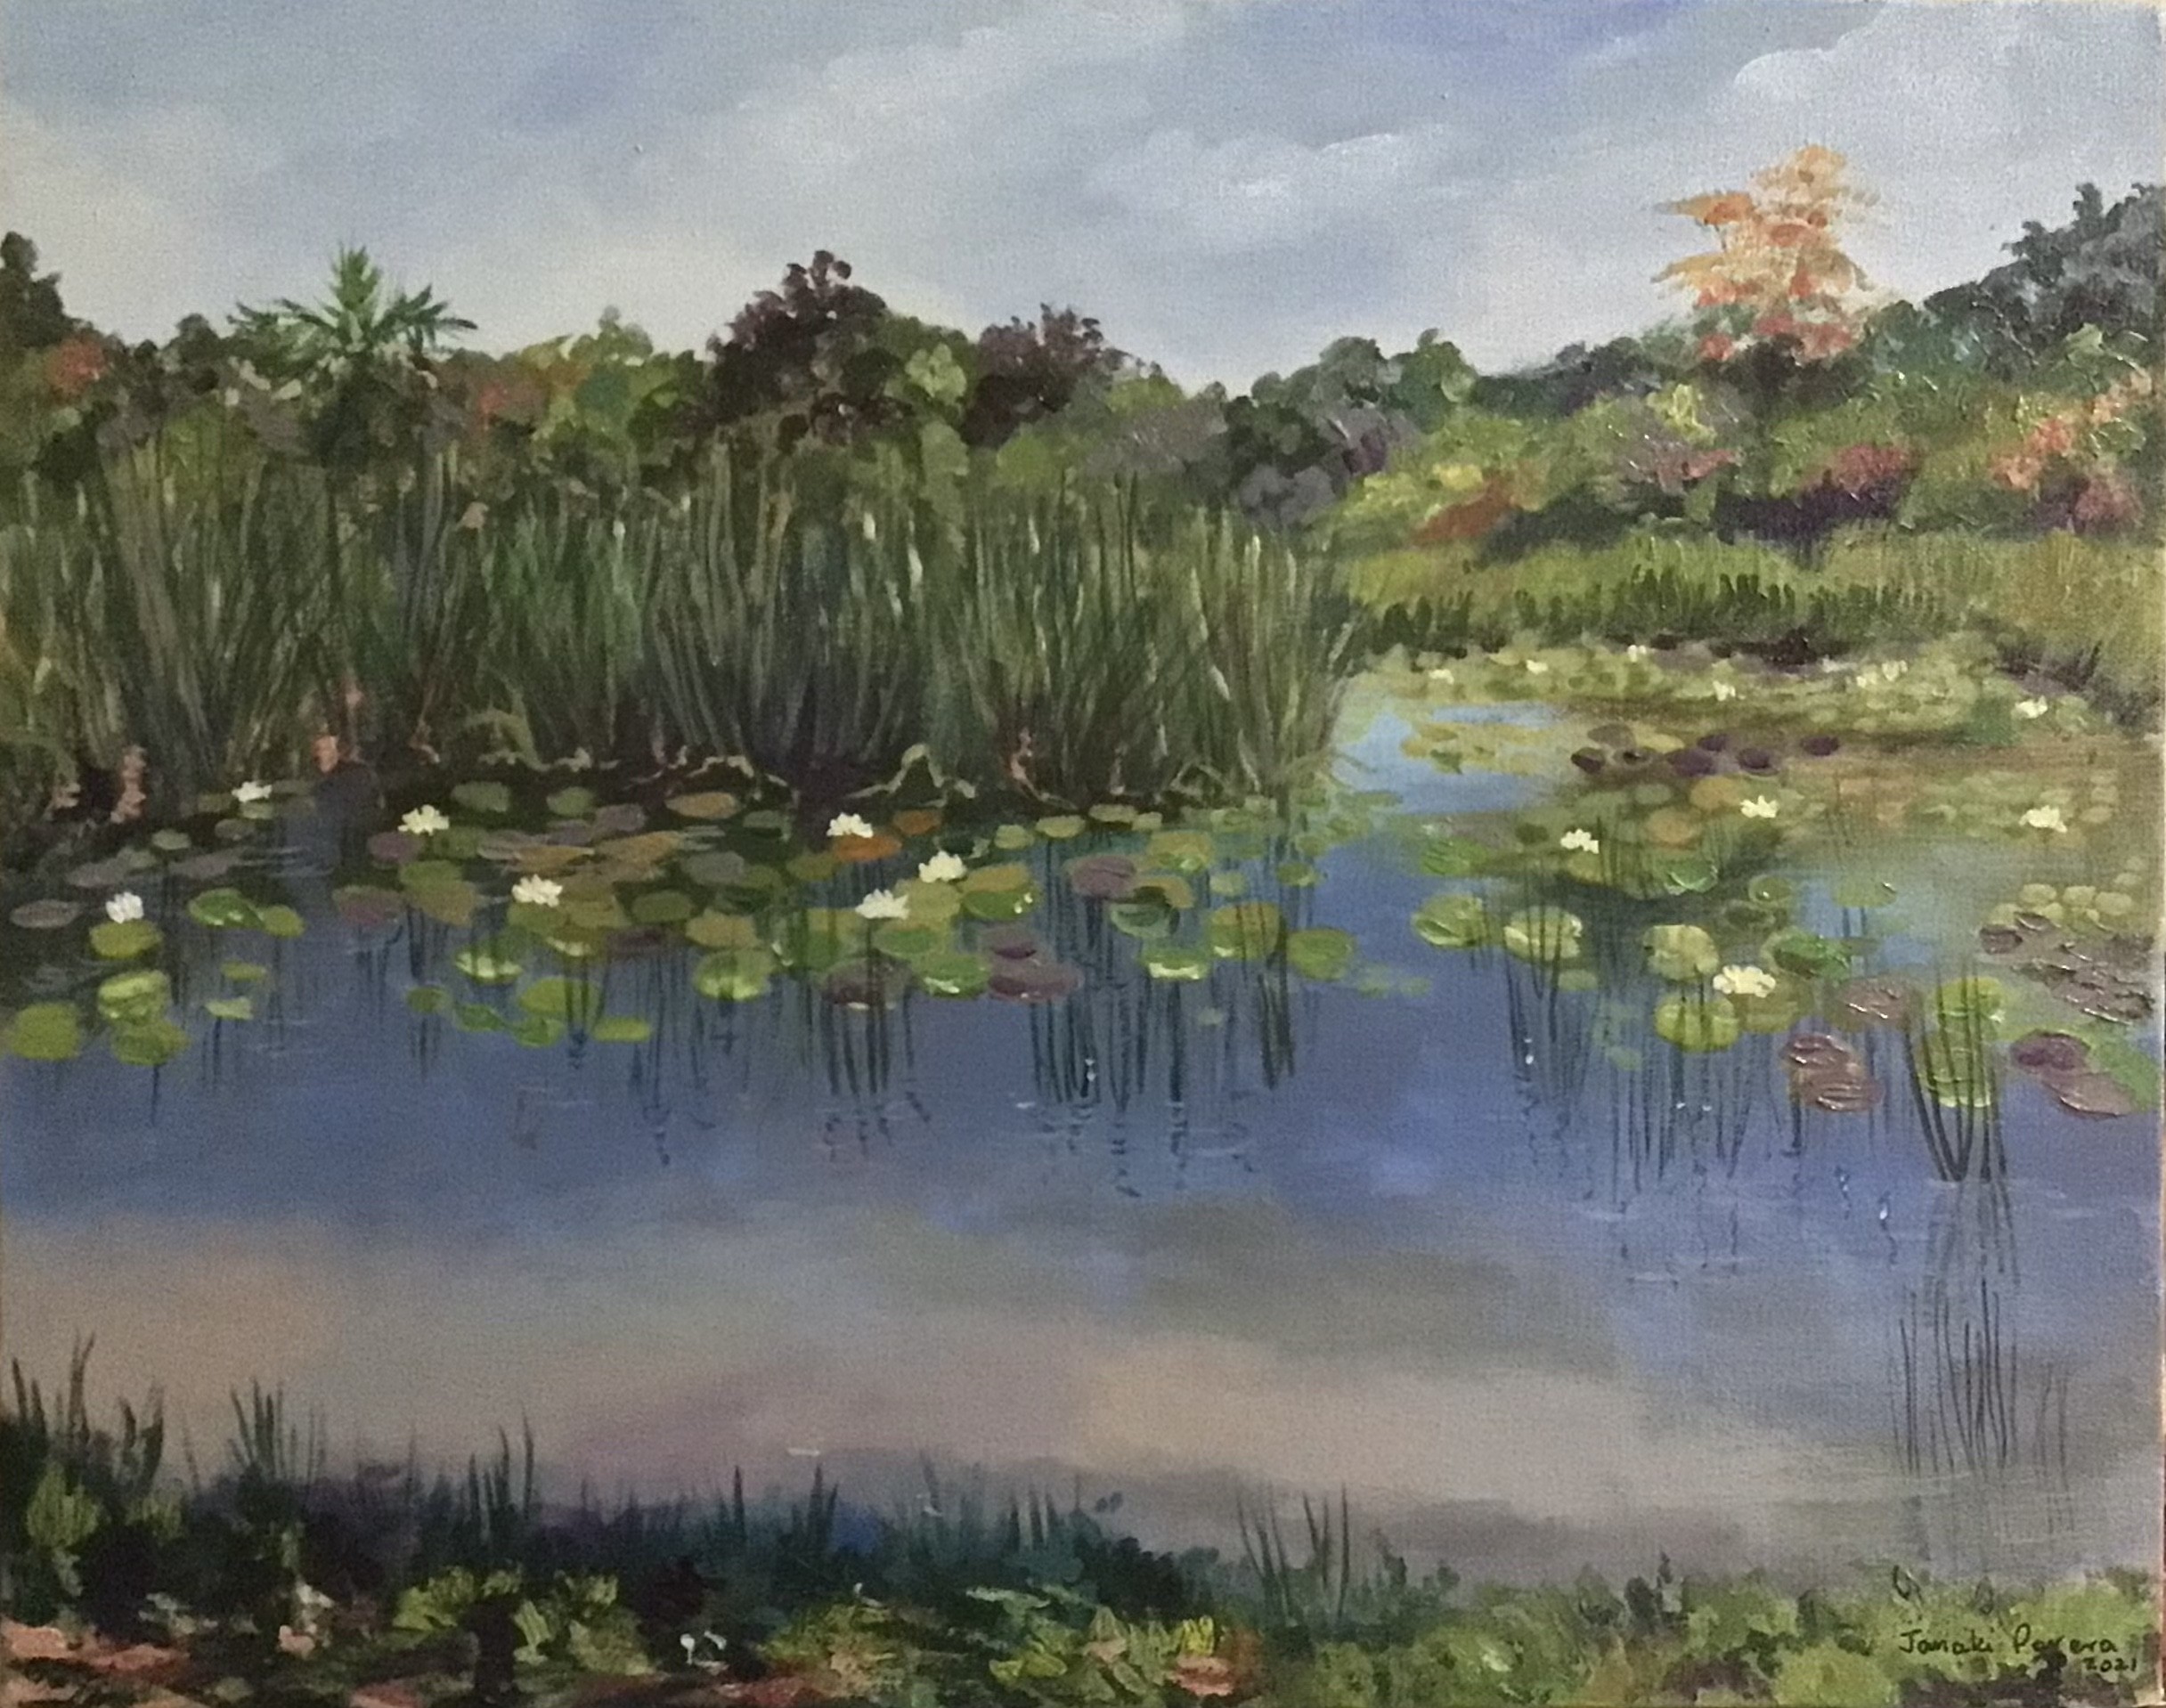 Lotus Pond by Janaki Perera